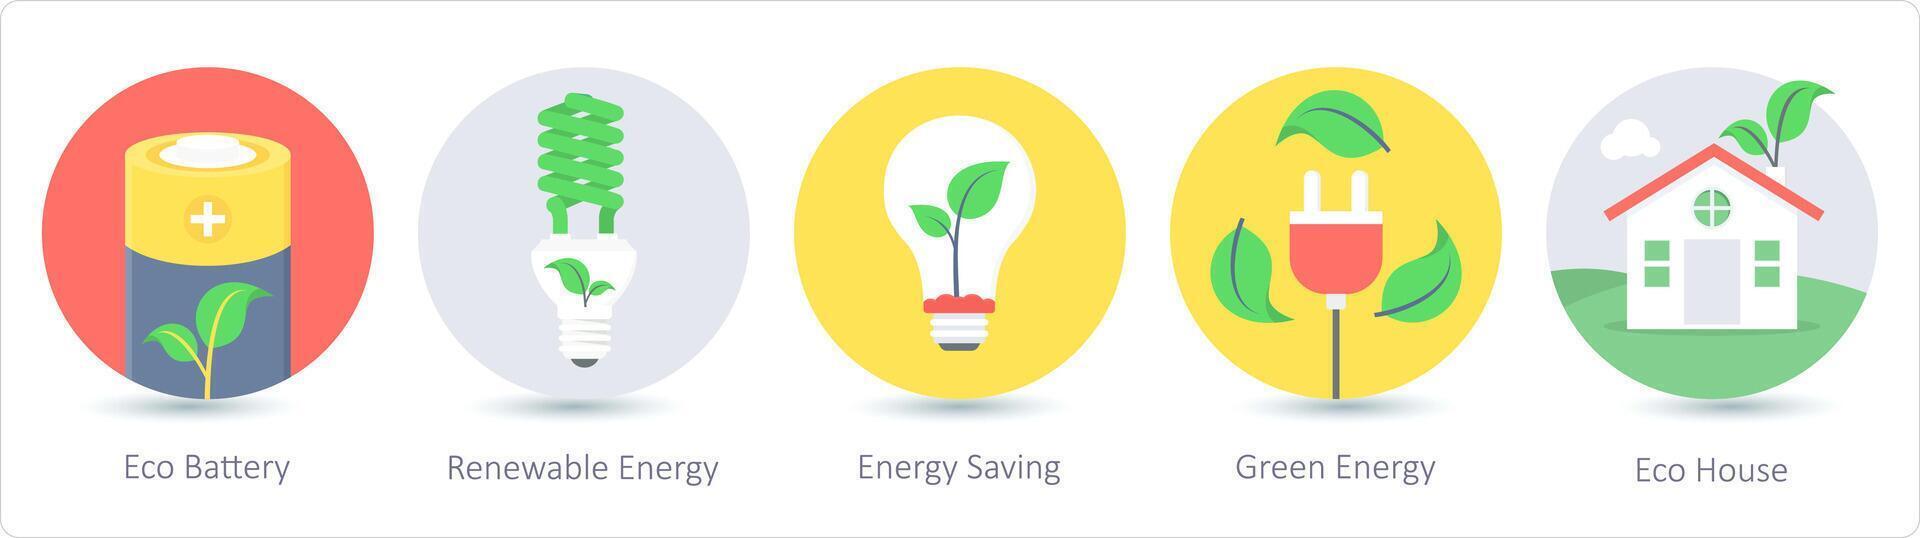 un conjunto de 5 5 ecología íconos como eco batería, renovable energía, energía ahorro vector